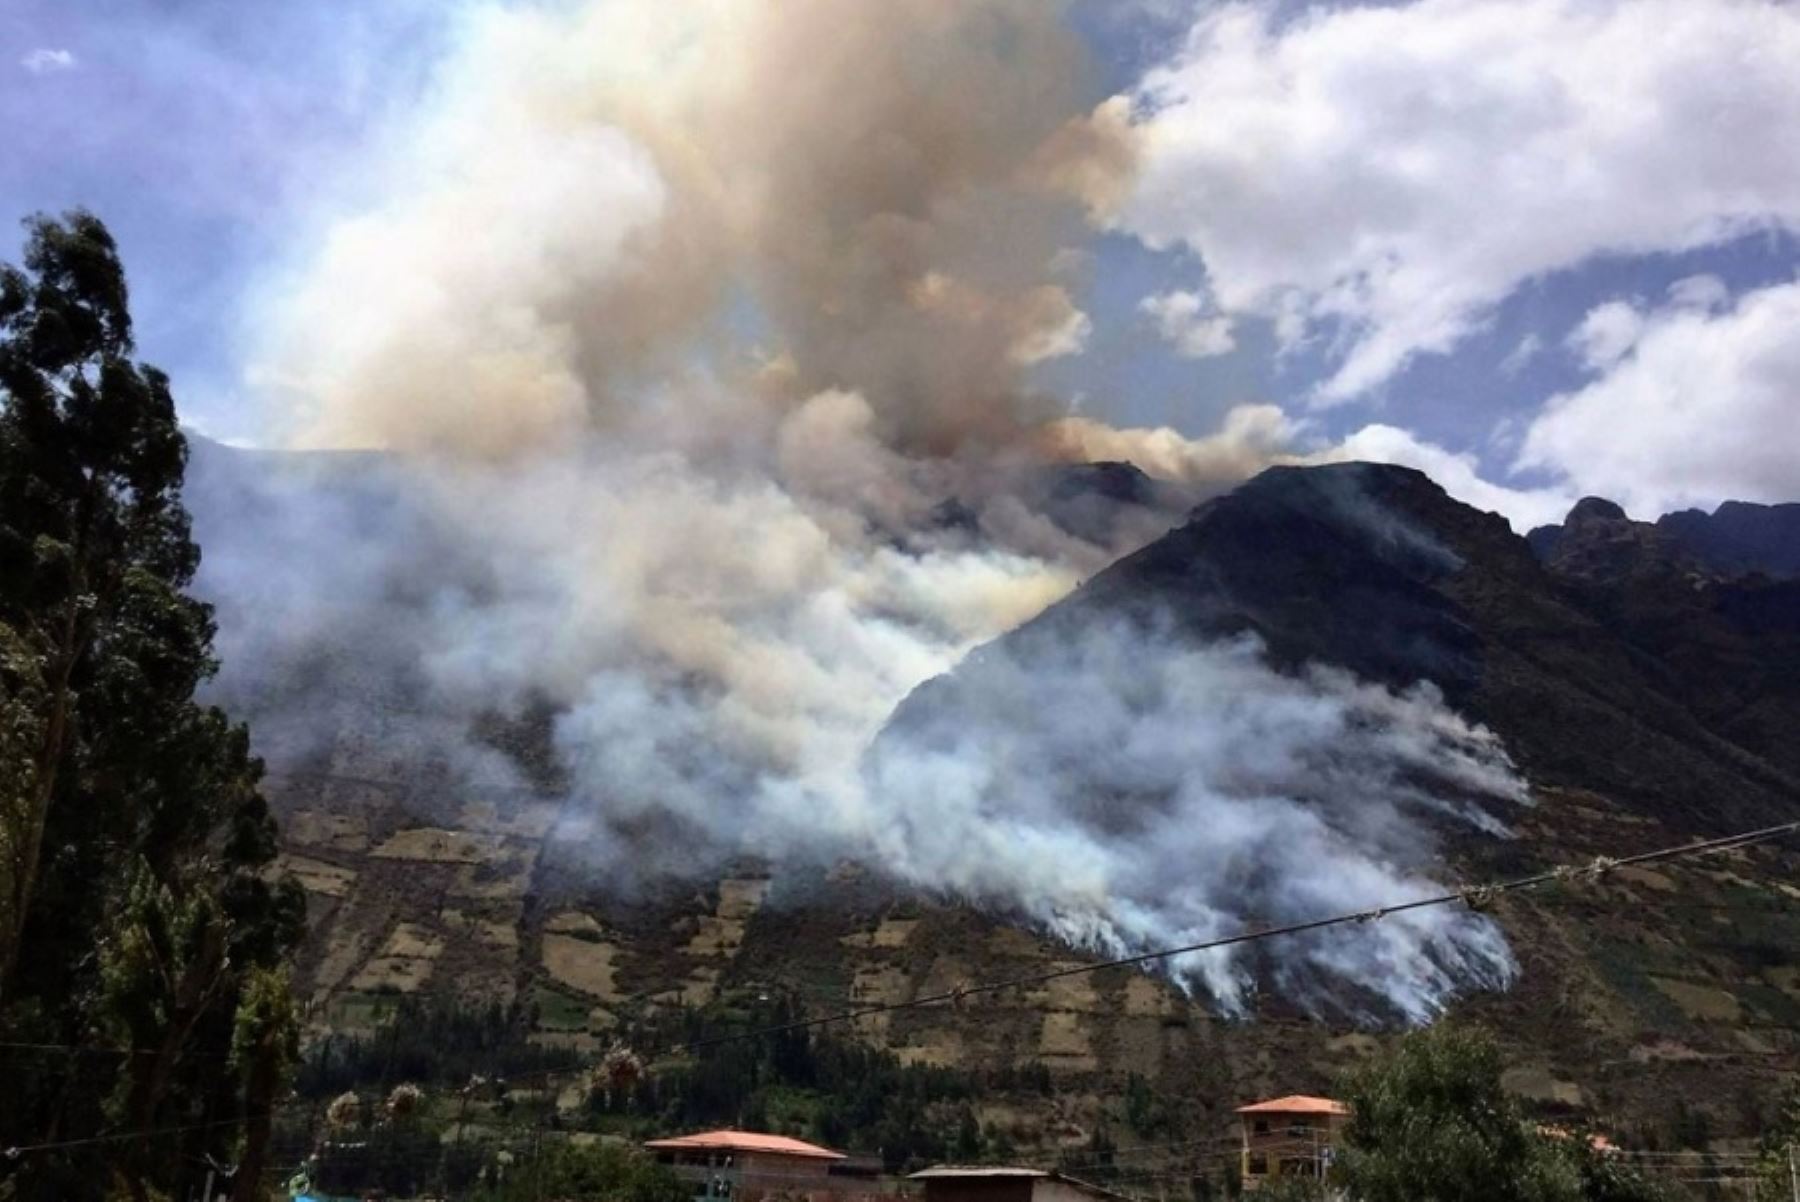 Un incendio forestal que se registró por tres días consecutivos y amenazaba con llegar al parque arqueológico de Mauka Llaqta, ubicado en el distrito de Pacarectambo, provincia cusqueña de Paruro, fue liquidado, informó hoy la Oficina Regional de Gestión de Riesgos y Seguridad de Cusco.